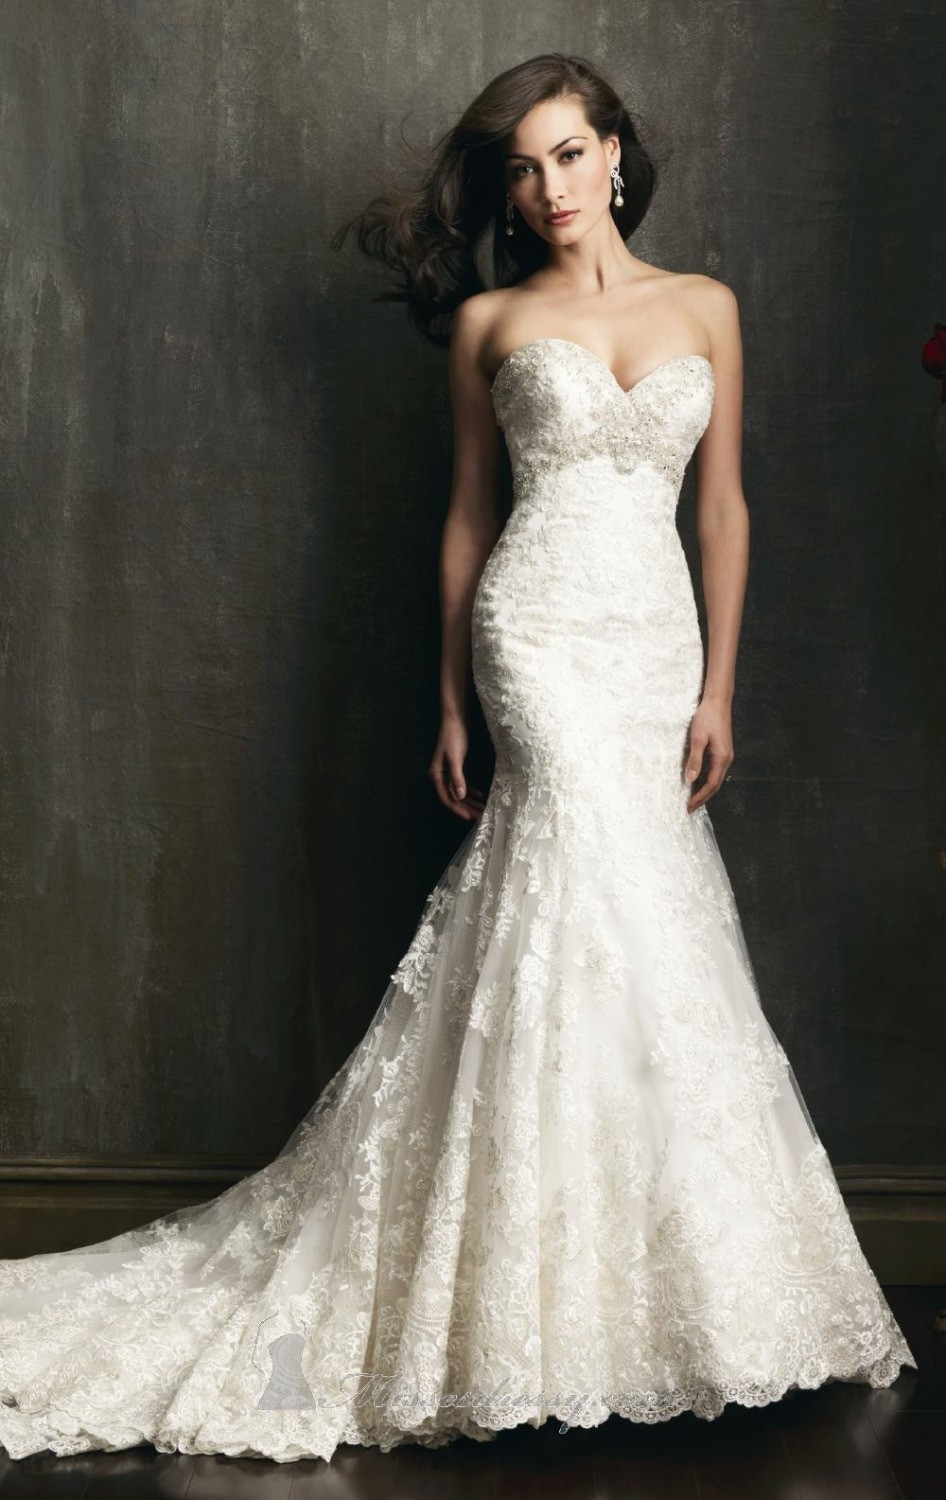 Lace Mermaid Wedding Dresses
 High Quality New Fashion White ivory Beading Lace Mermaid